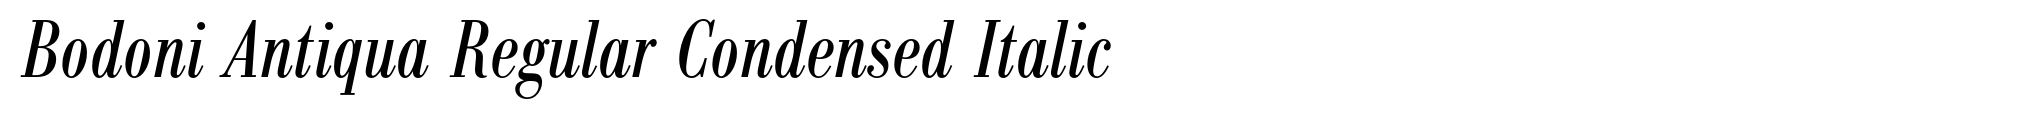 Bodoni Antiqua Regular Condensed Italic image